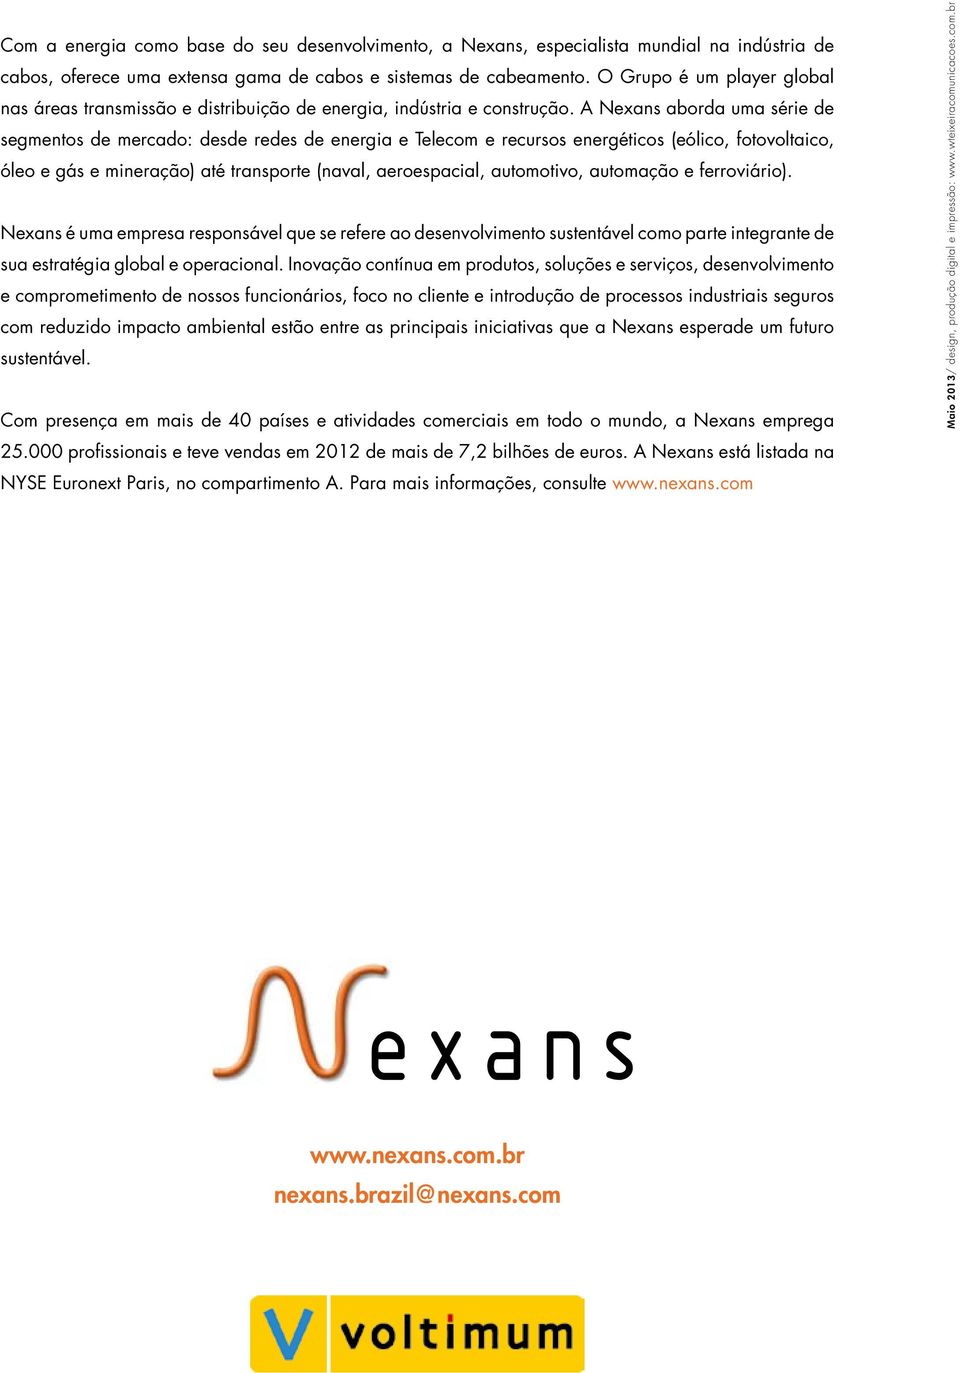 A Nexans aborda uma série de segmentos de mercado: desde redes de energia e Telecom e recursos energéticos (eólico, fotovoltaico, óleo e gás e mineração) até transporte (naval, aeroespacial,